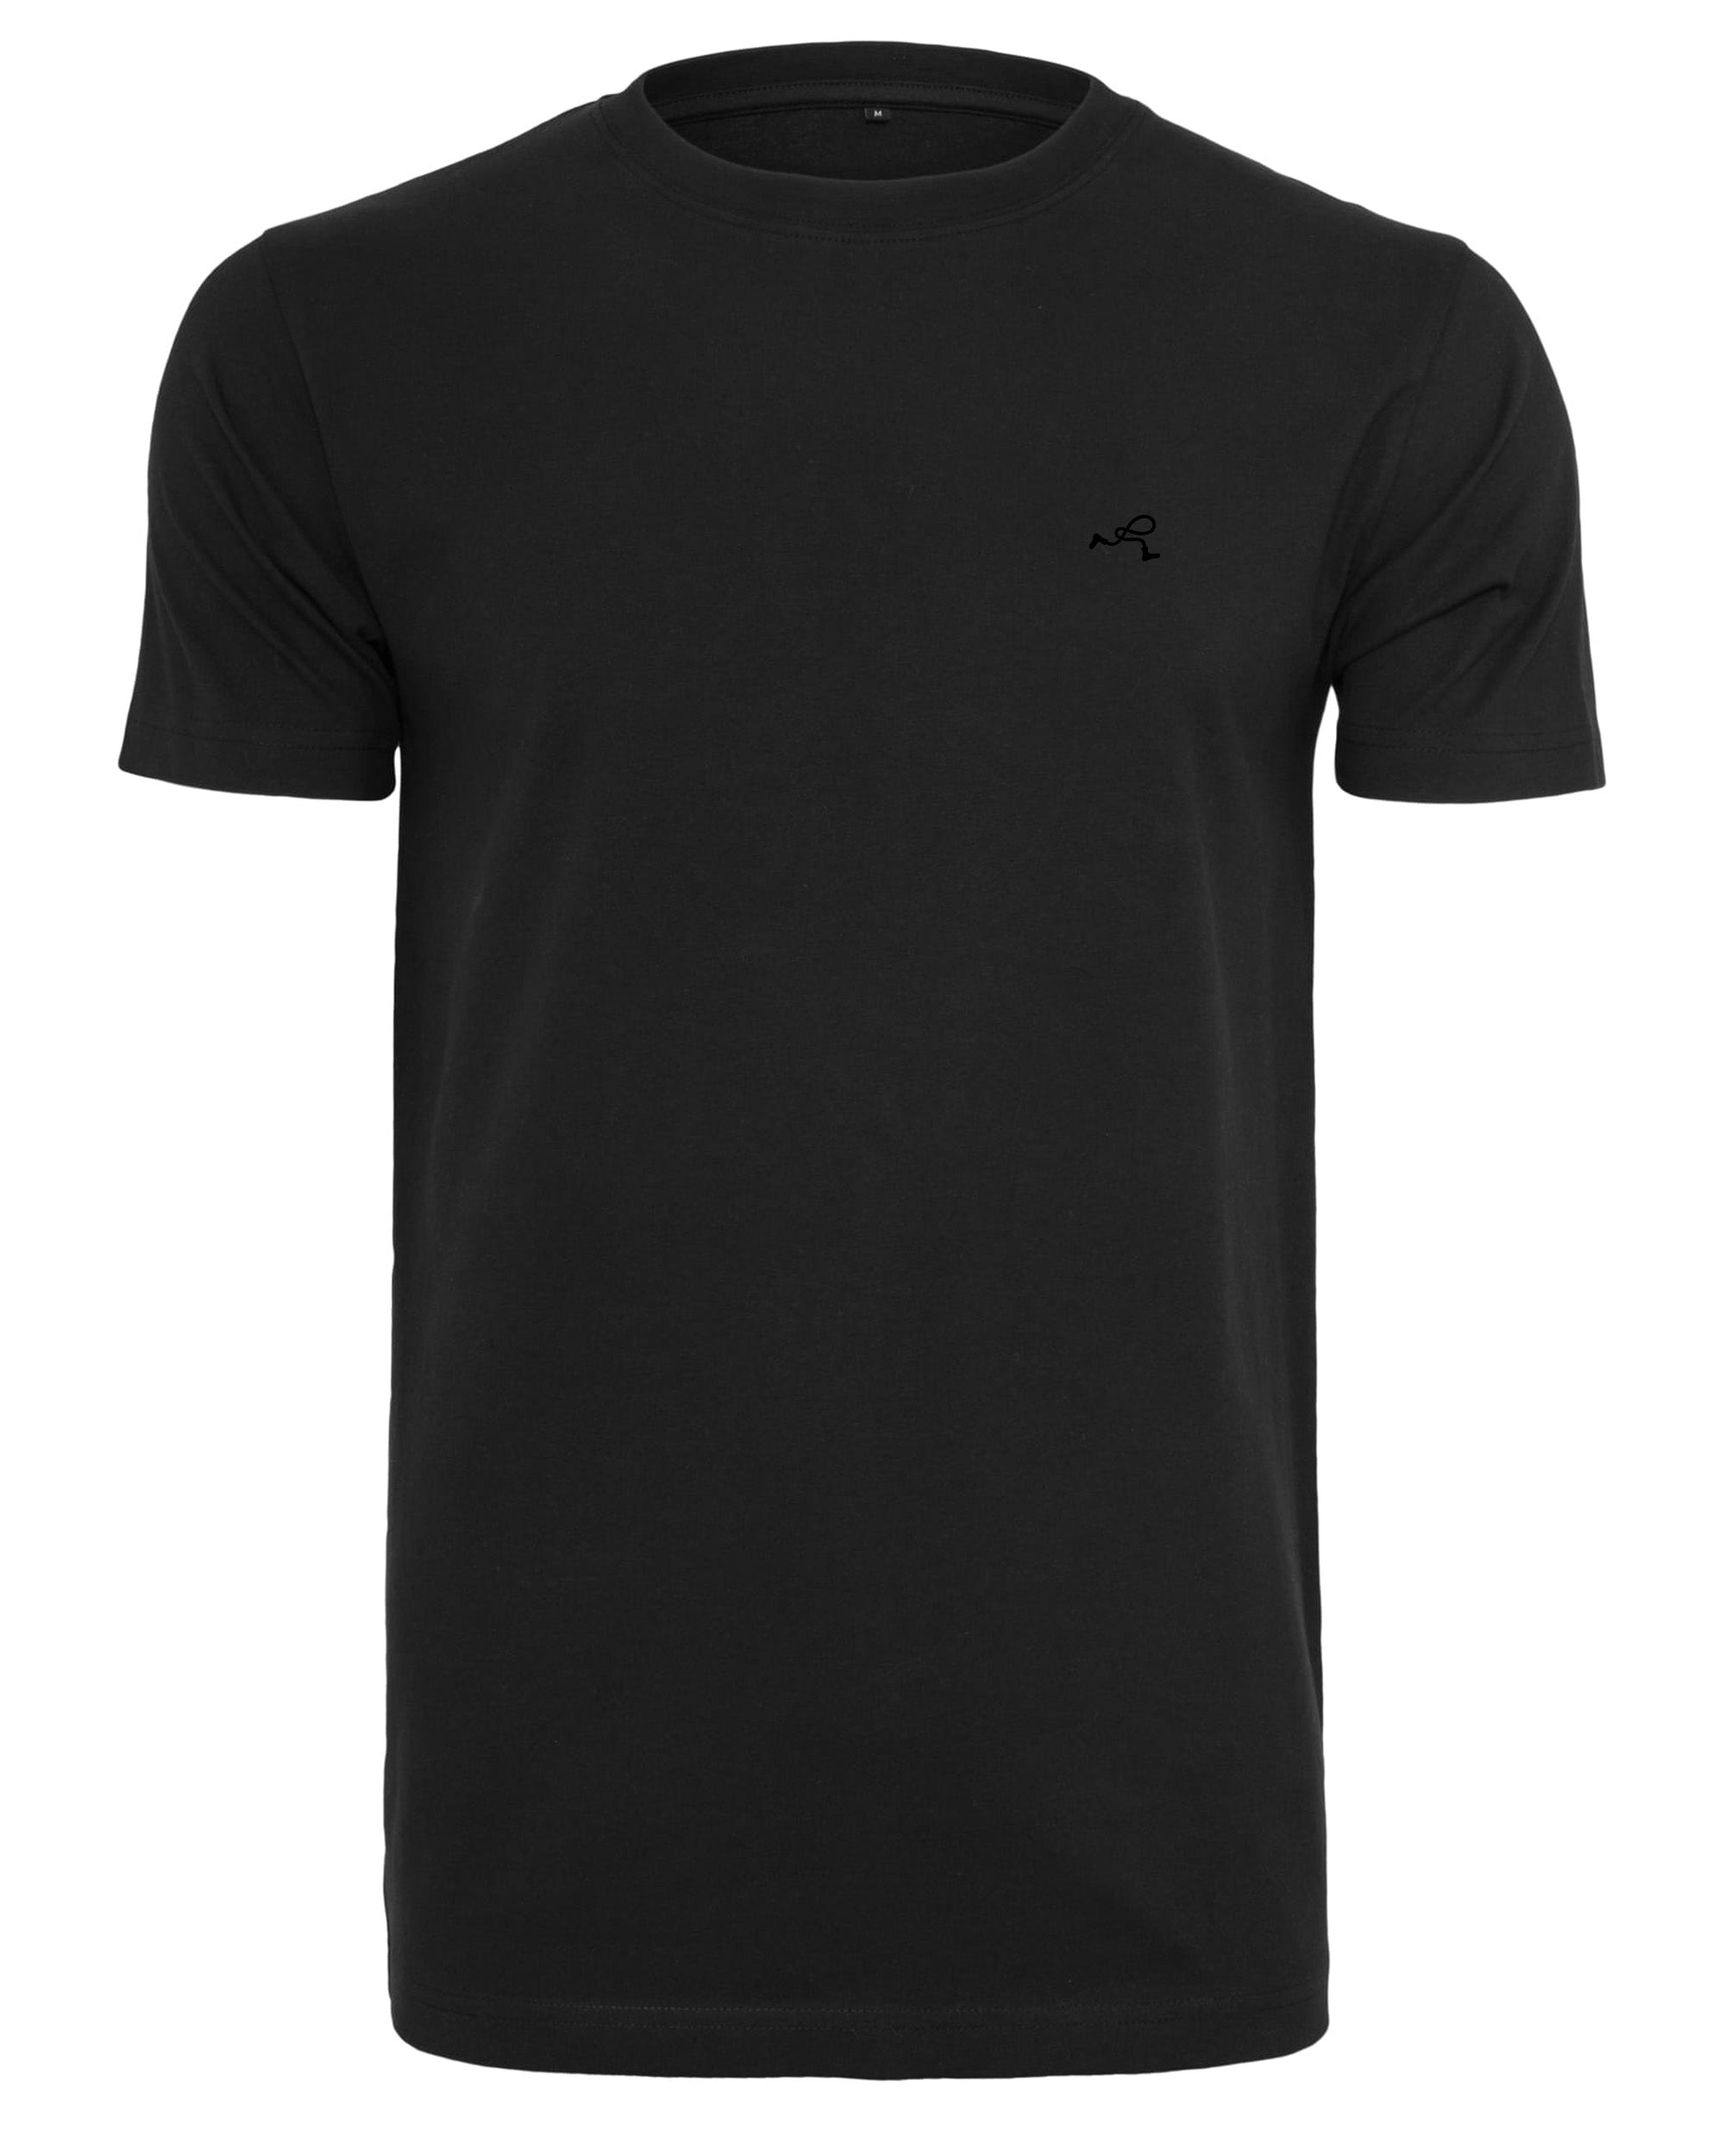 Basic T-Shirt in schwarz von vorne mit kleinem schwarzem Rollo Socks Label auf der Brust